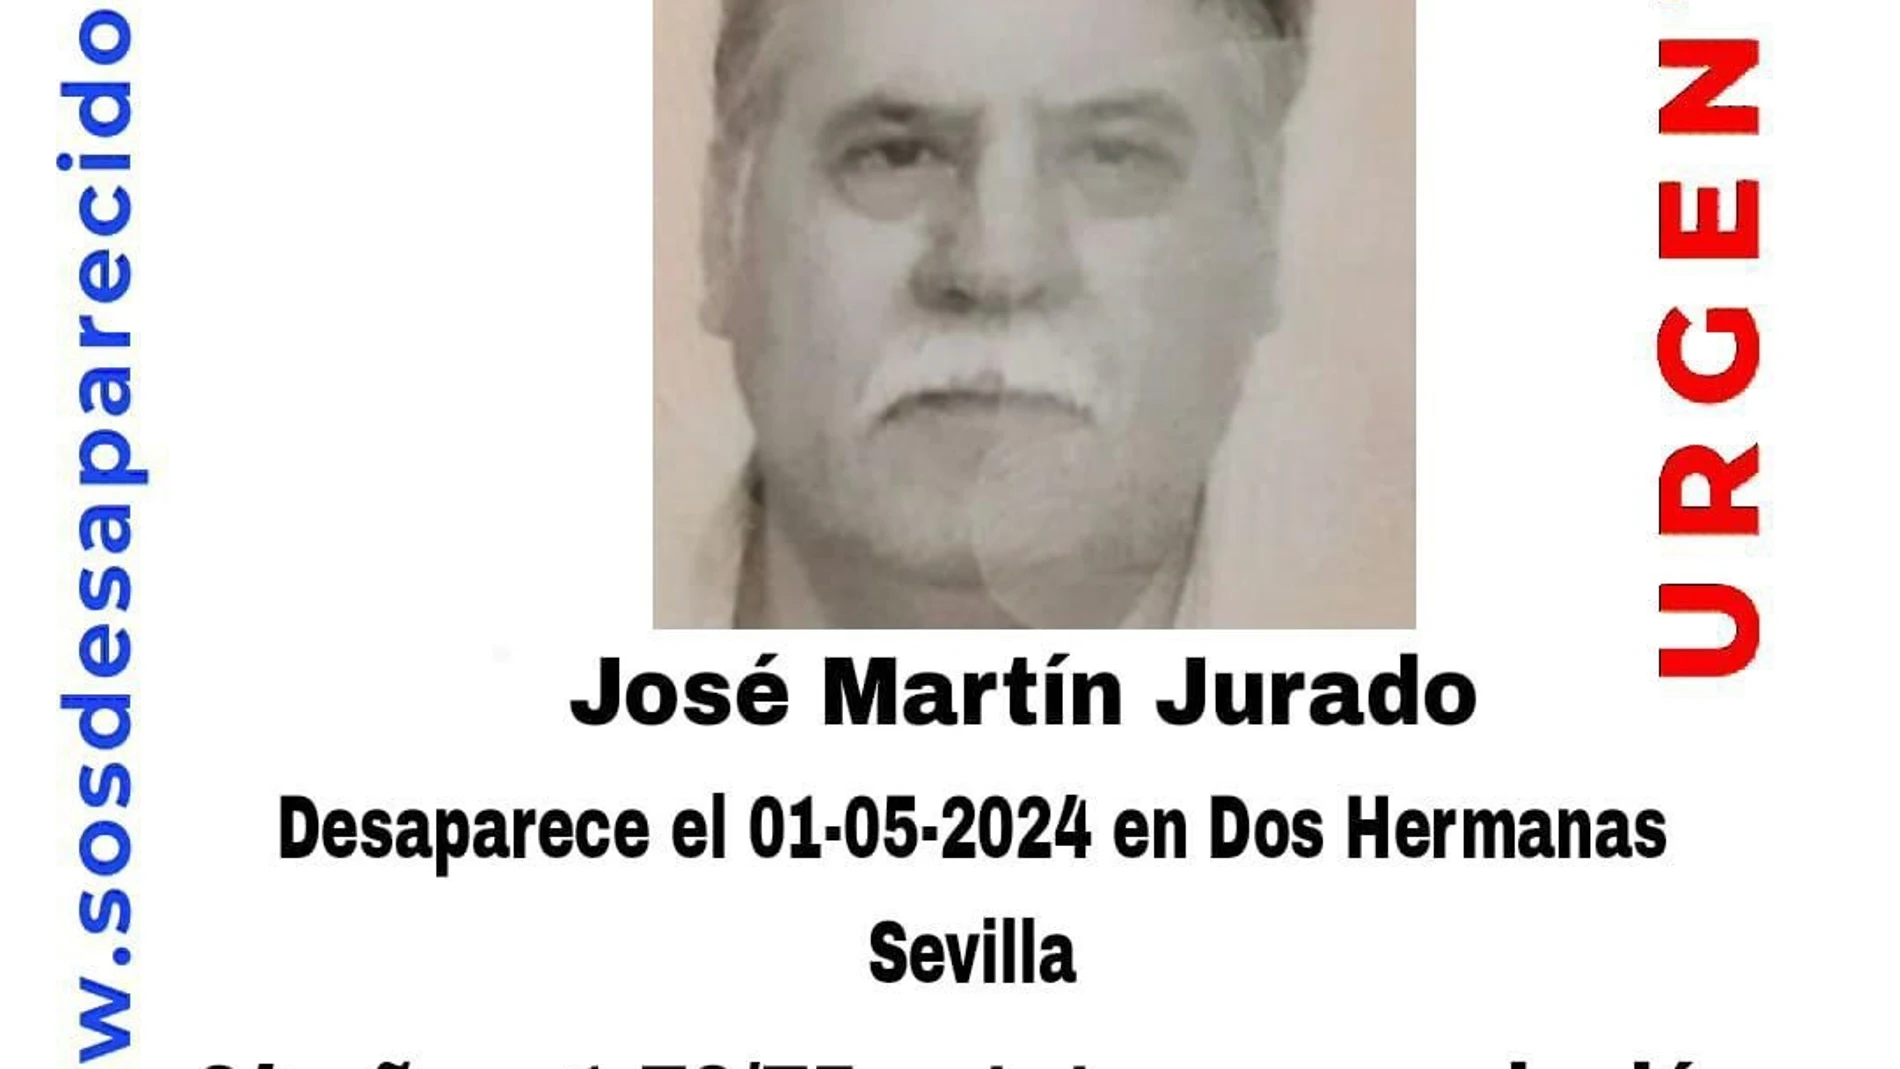 Cartel sobre la desaparición de José Martín Jurado SOS DESAPARECIDO 02/05/2024